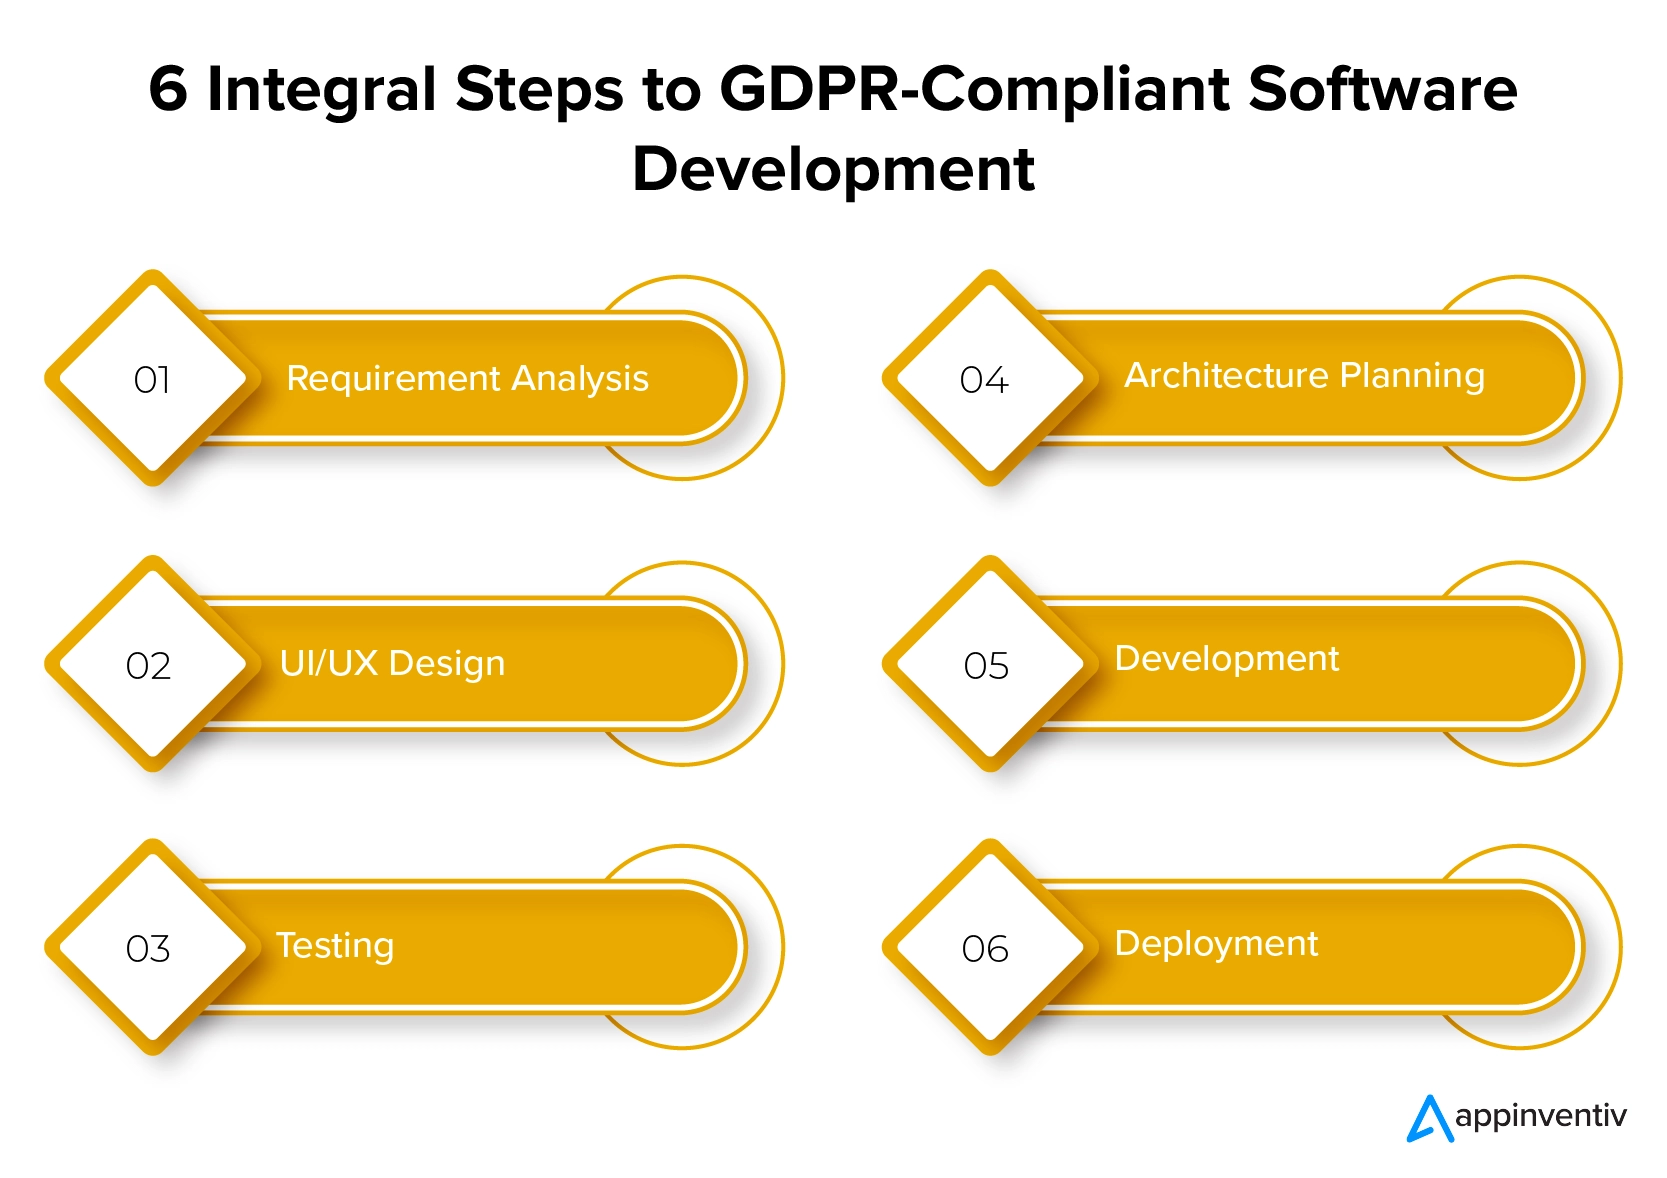 6 خطوات متكاملة لتطوير البرمجيات المتوافقة مع اللائحة العامة لحماية البيانات